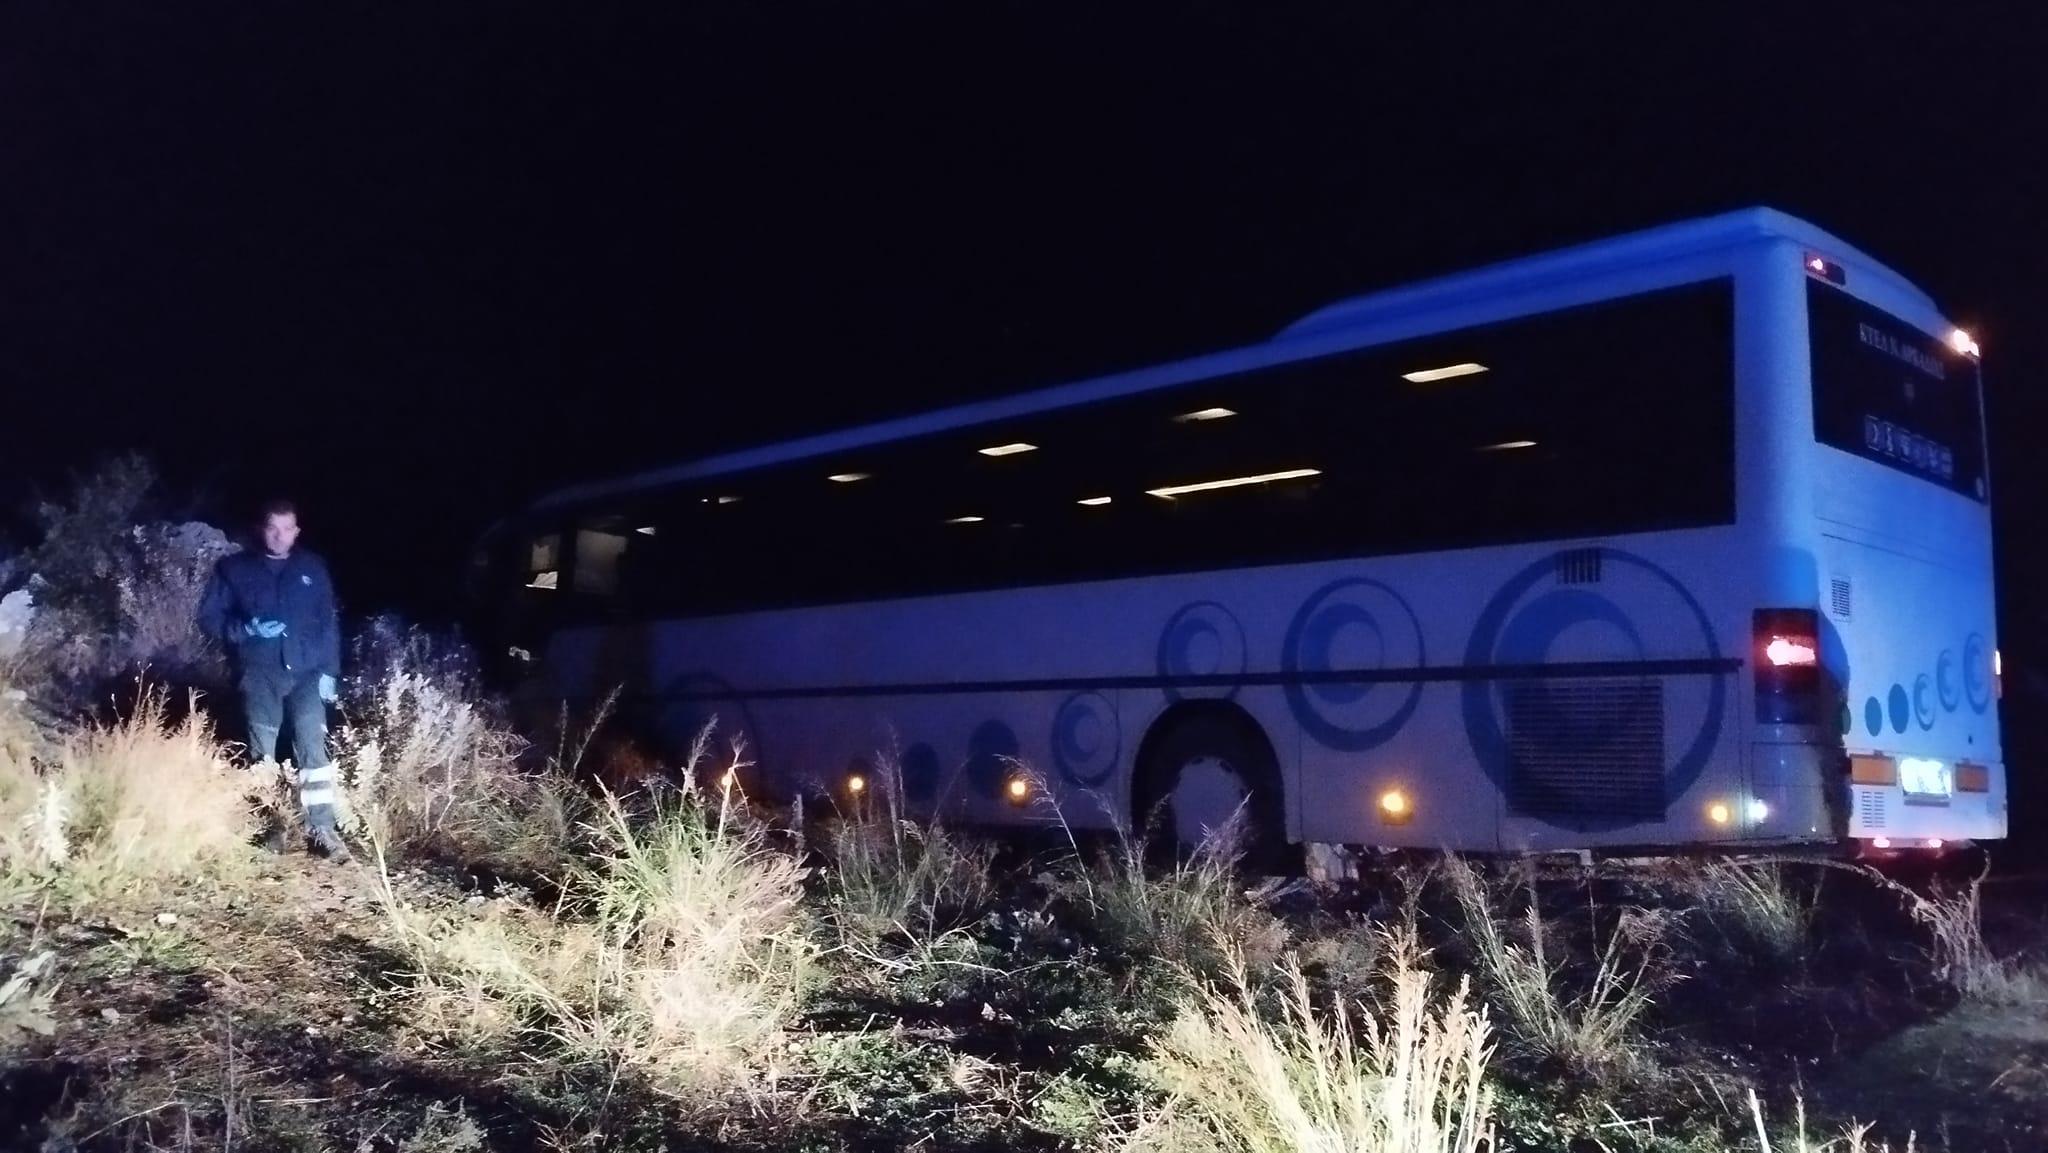 Αρκαδία : Οδηγός έπαθε ανακοπή πάνω στο τιμονι και έχασε τον έλεγχο λεωφορείου του ΚΤΕΛ